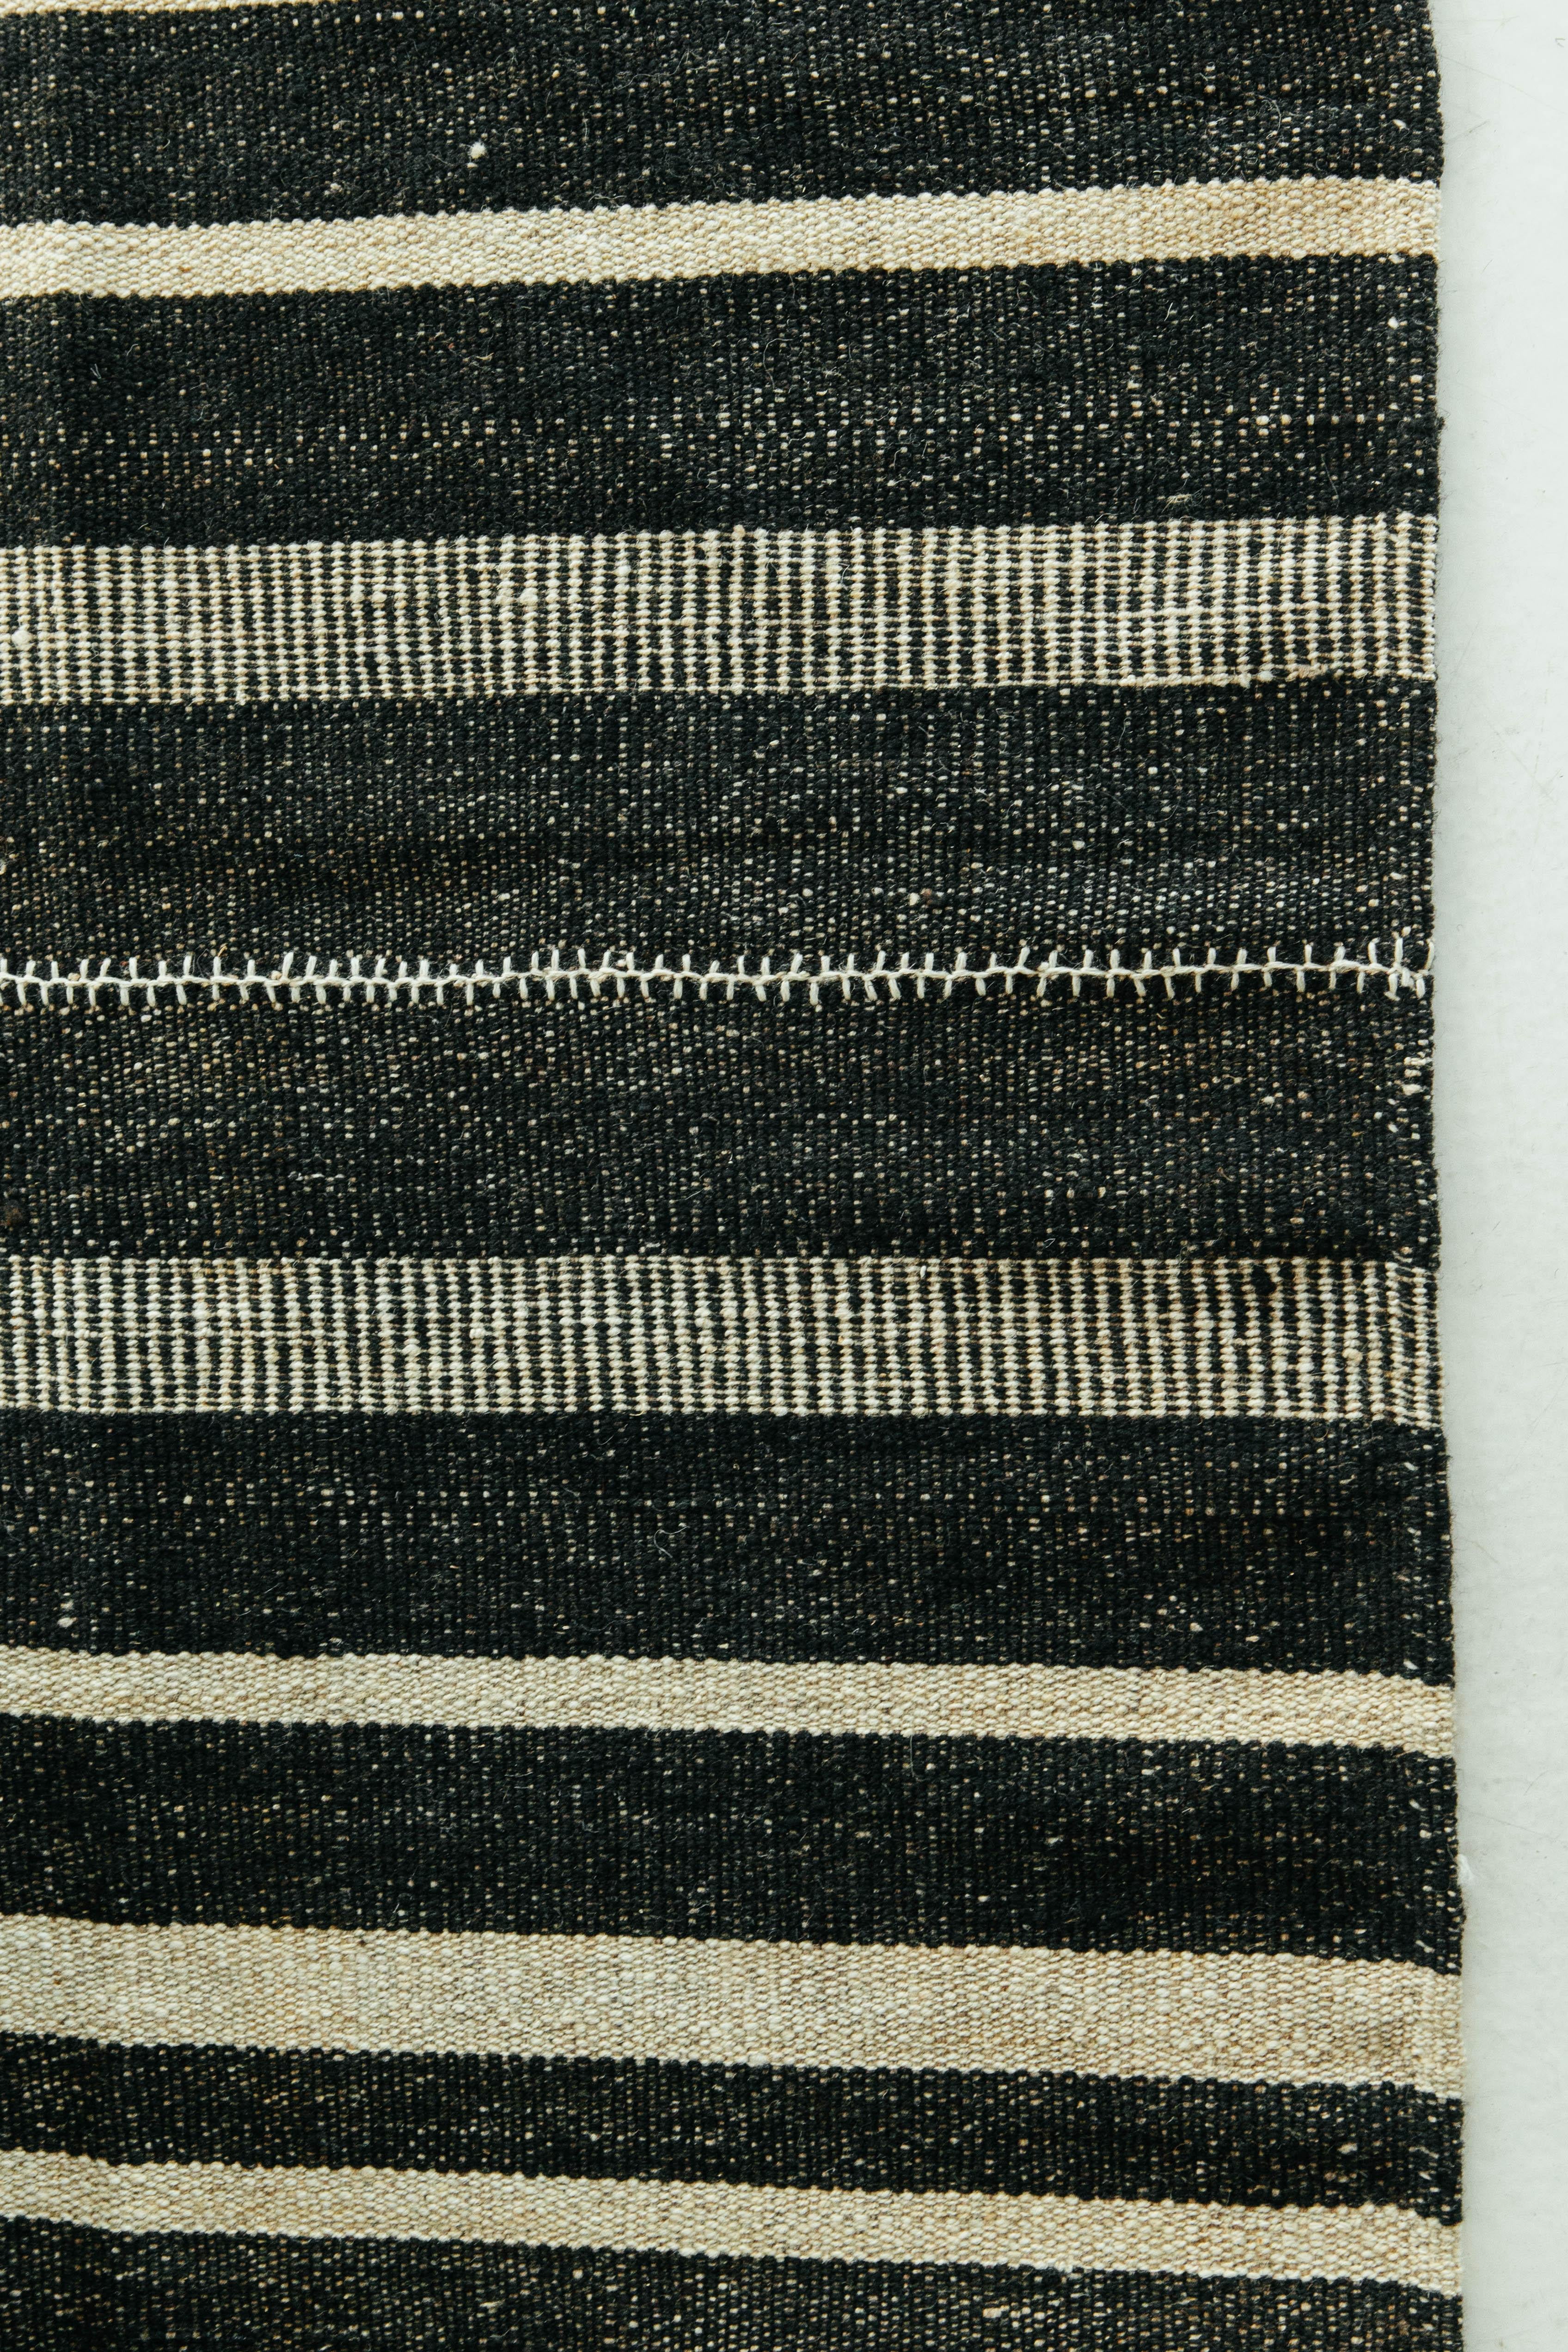 Dieser persische Jejim-Kilim ist ein gebändertes Flachgewebe mit abwechselnd schwarzen und elfenbeinfarbenen Streifen in verschiedenen Größen und Ausführungen. Persische Flachgewebe bestehen aus der besten Wolle und werden ausnahmsweise gewebt, um